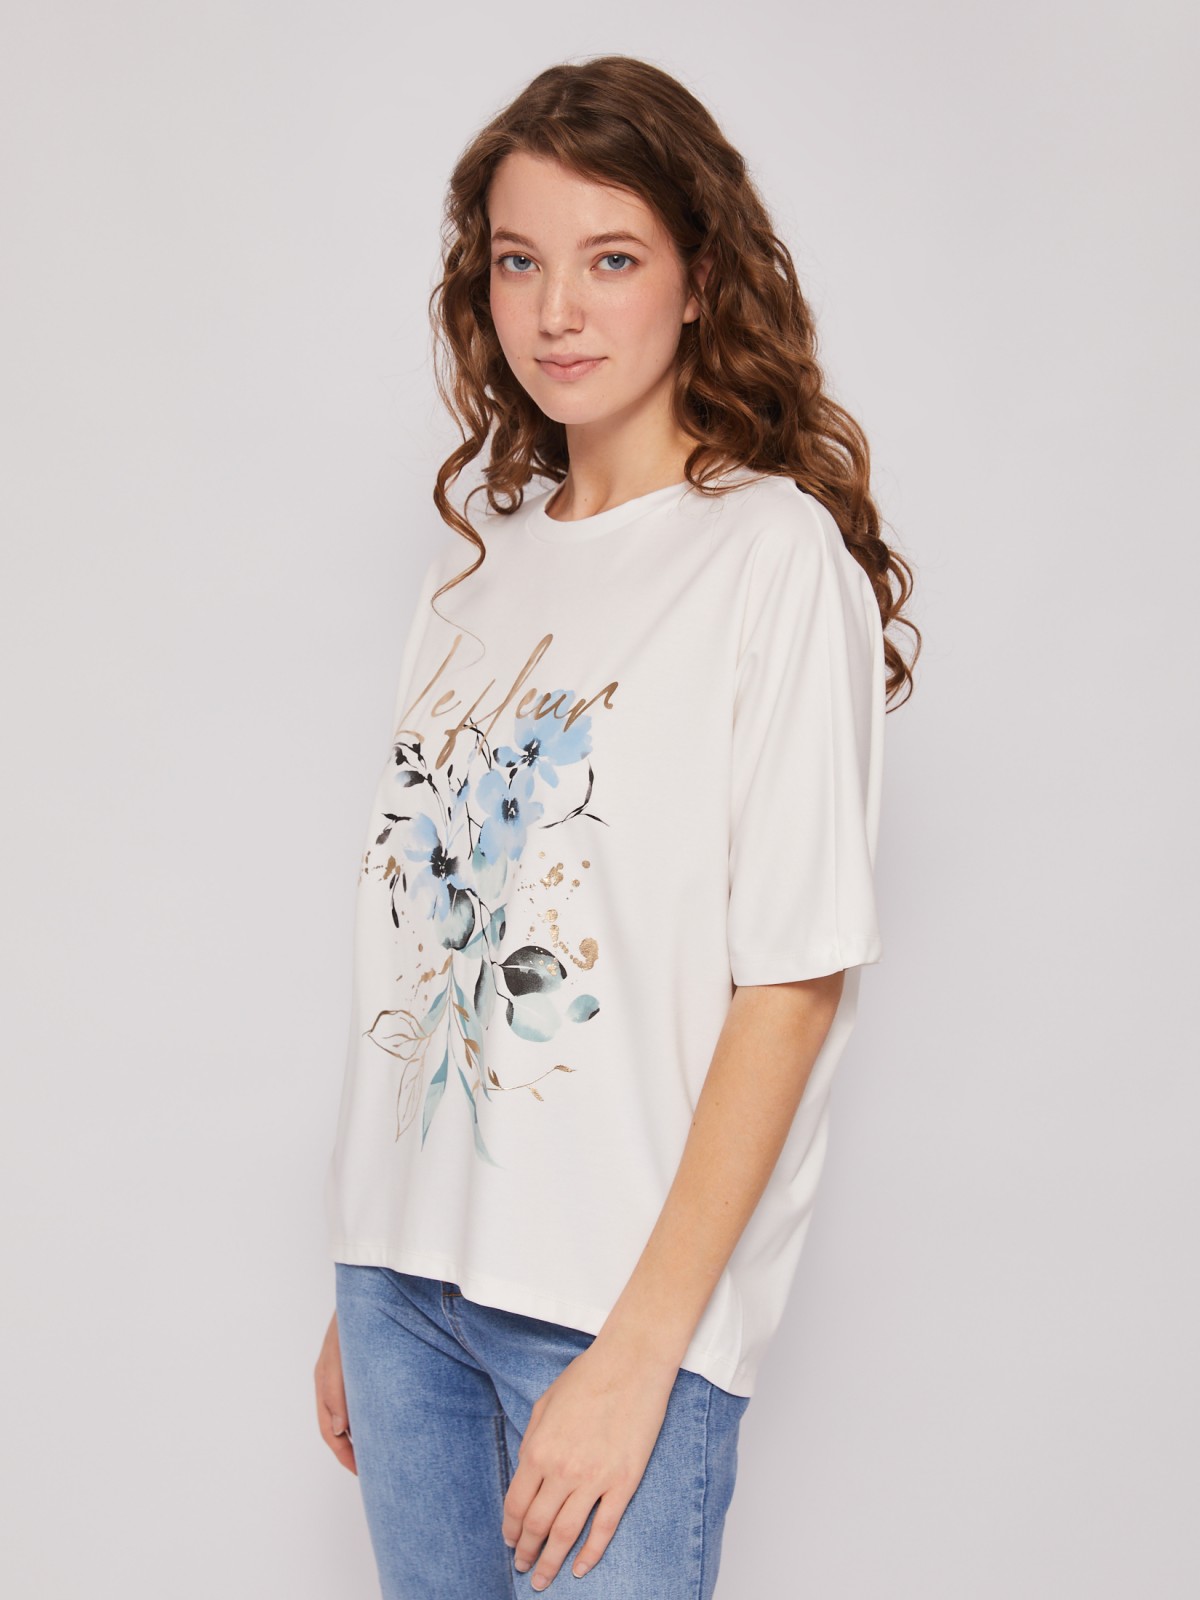 Блузка-футболка с коротким рукавом и цветочным принтом zolla 024213210111, размер M - фото 3